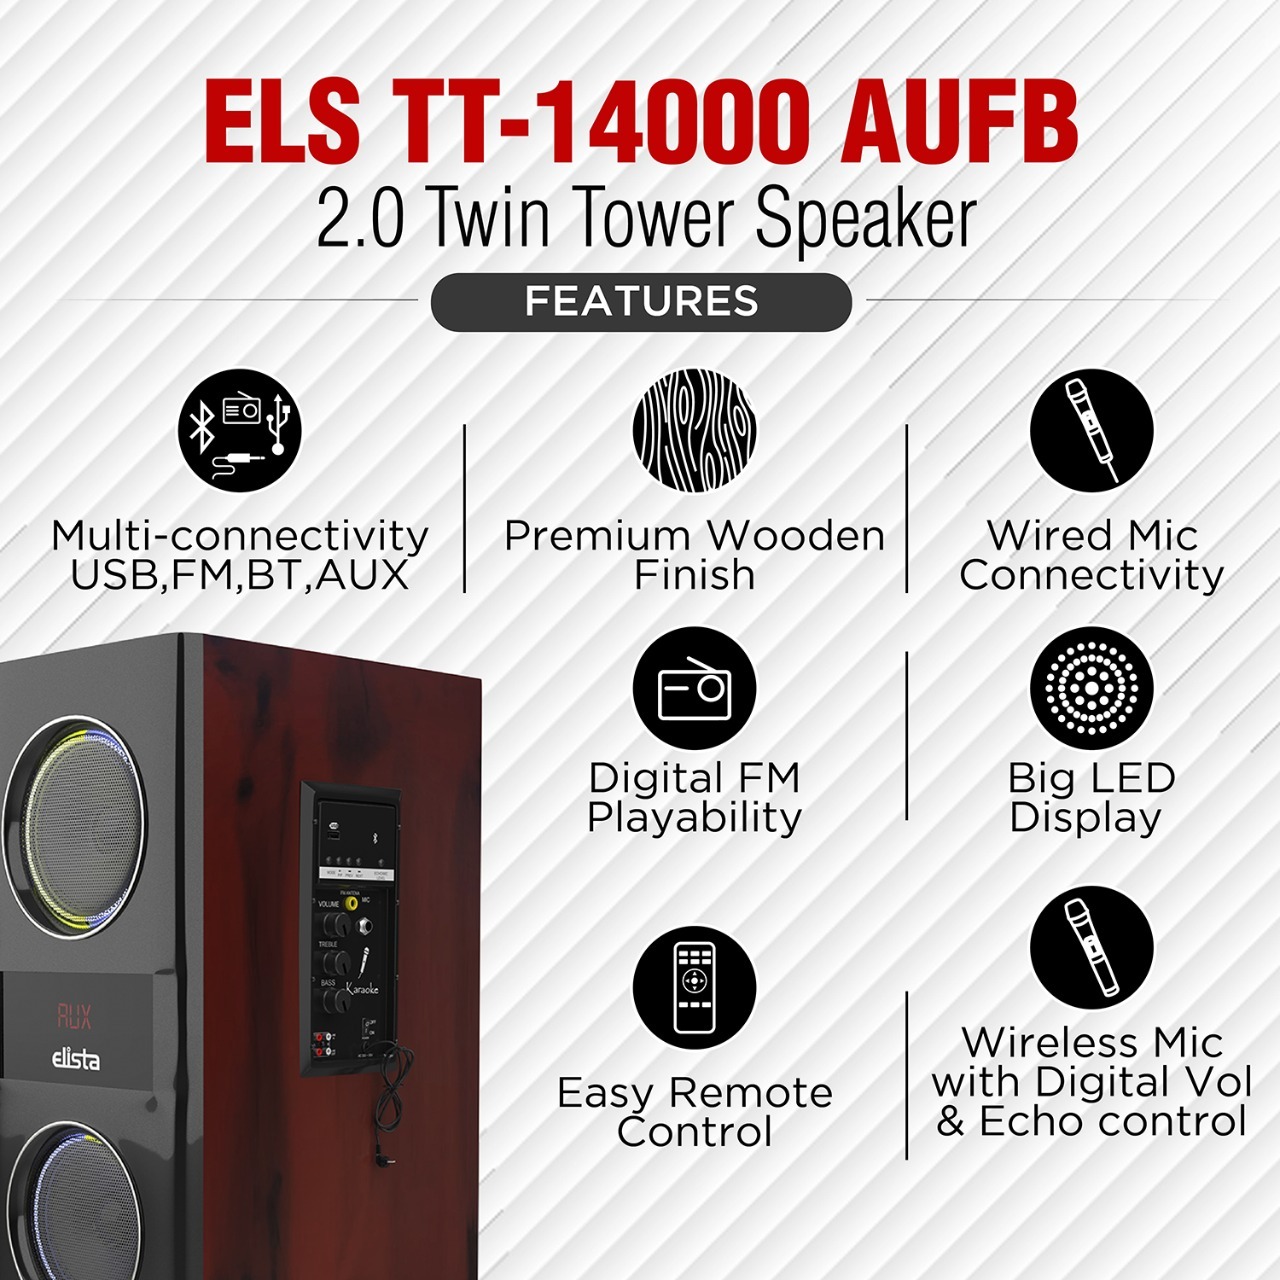 Elista Speaker – ELS TT-14000 AUFB